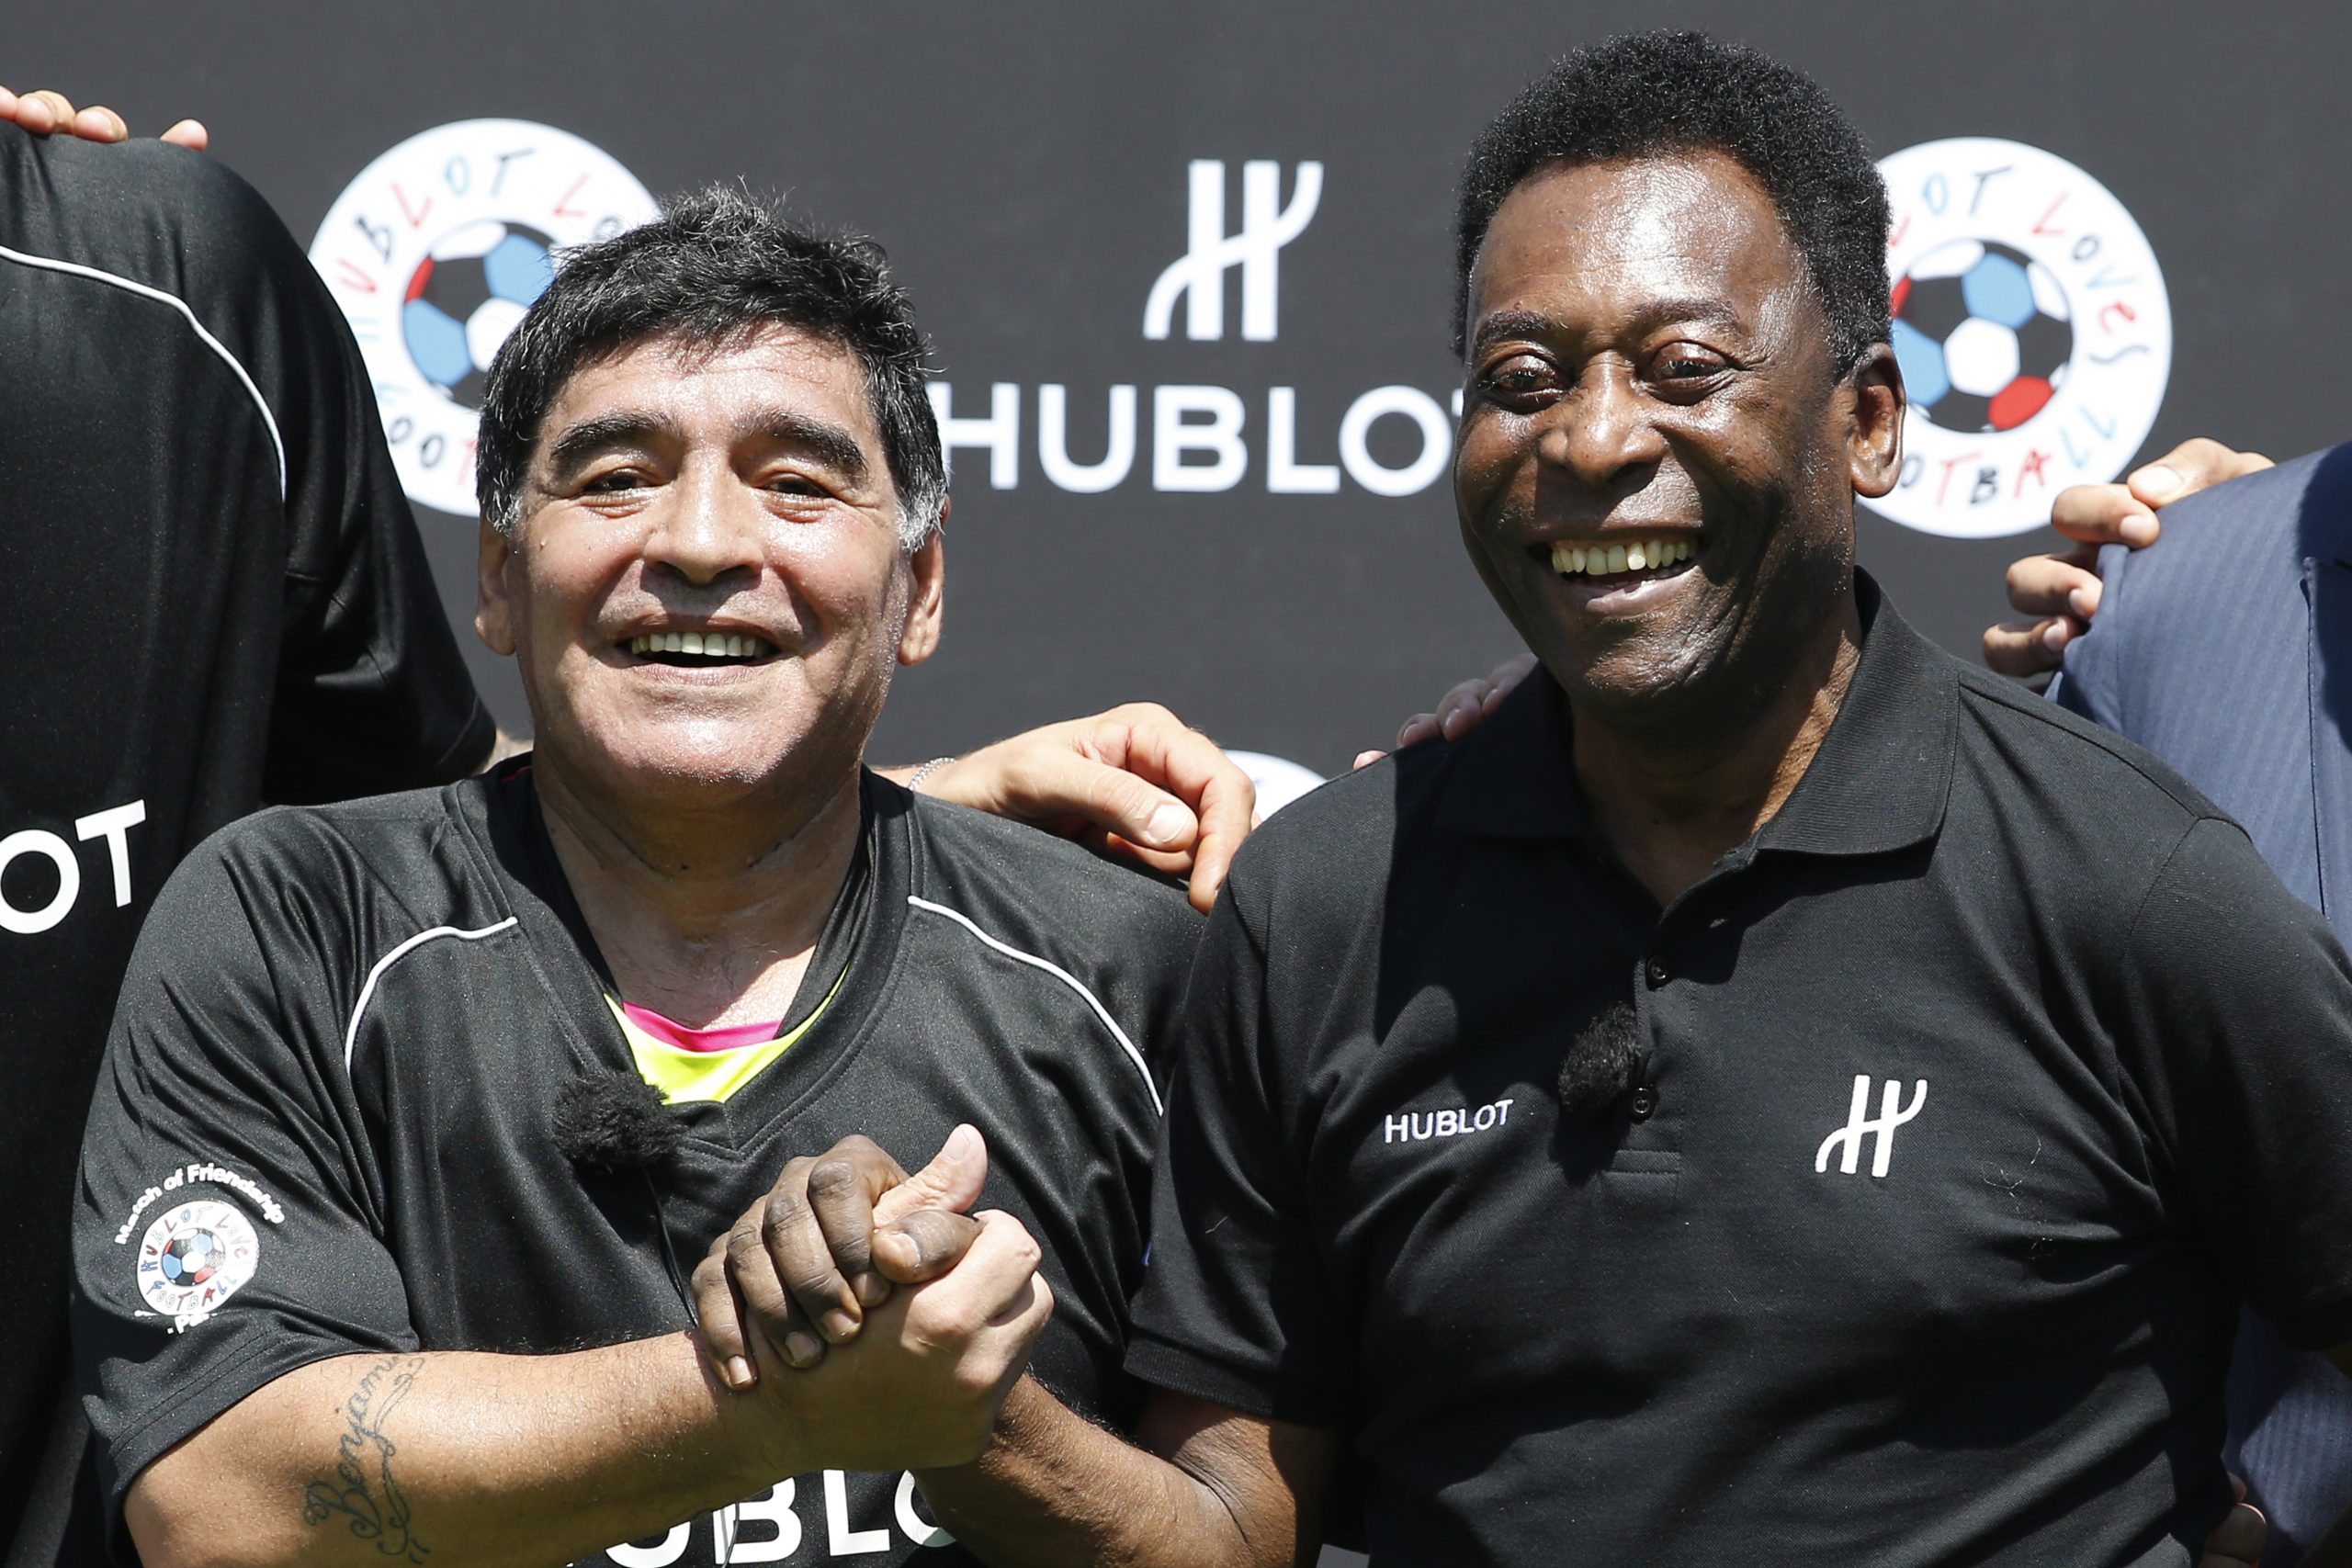 I love you, Diego' - Pele pens message for Maradona - SportsDesk